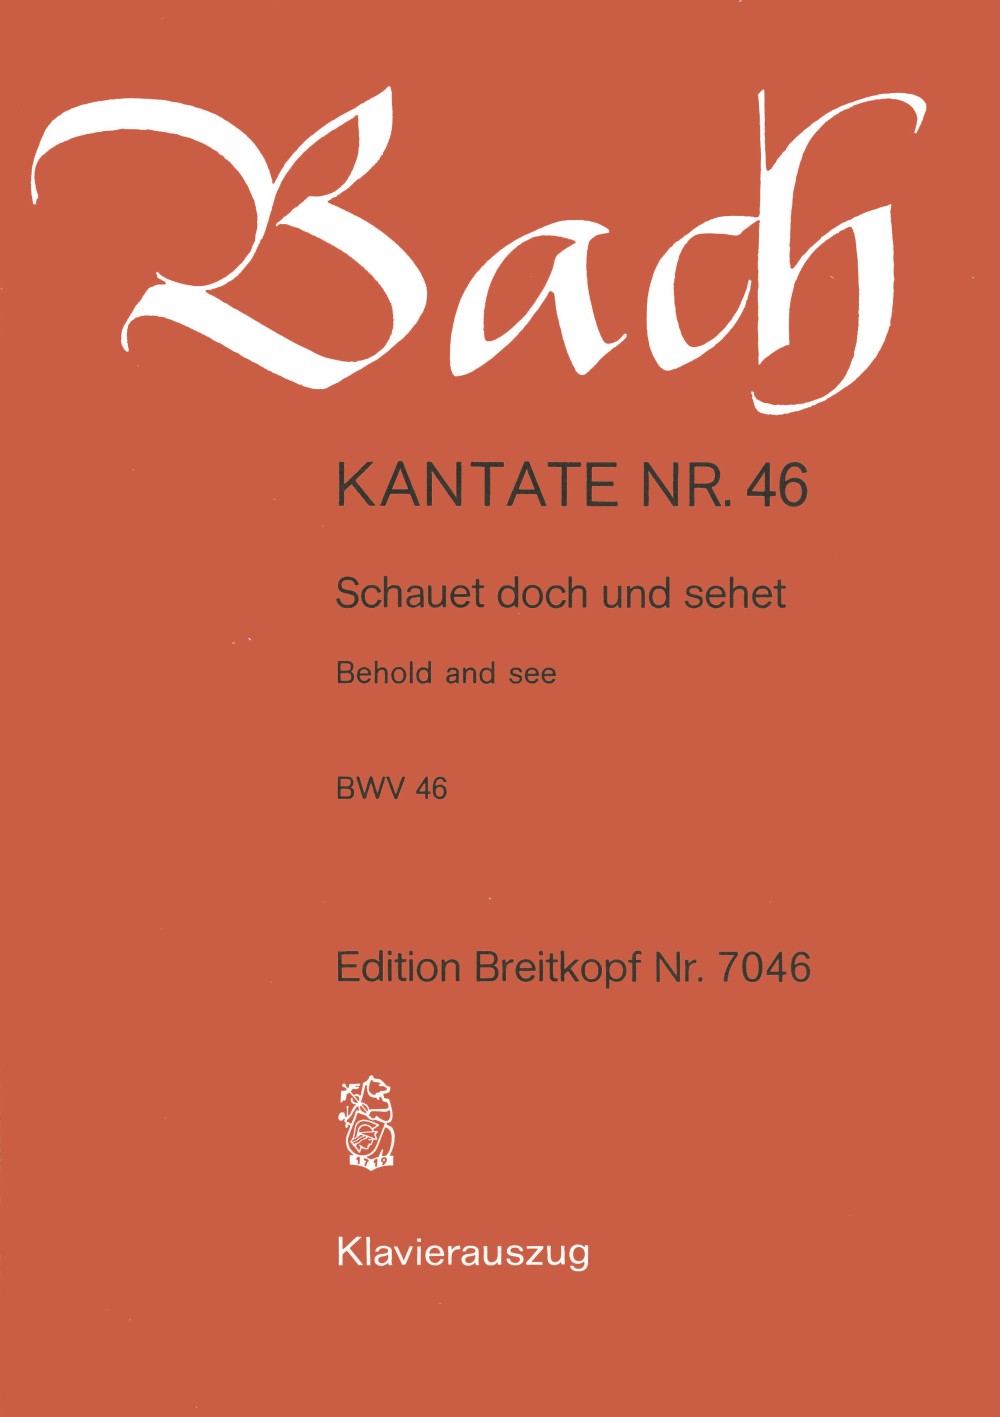 Bach: Schauet doch and sehet, BWV 46